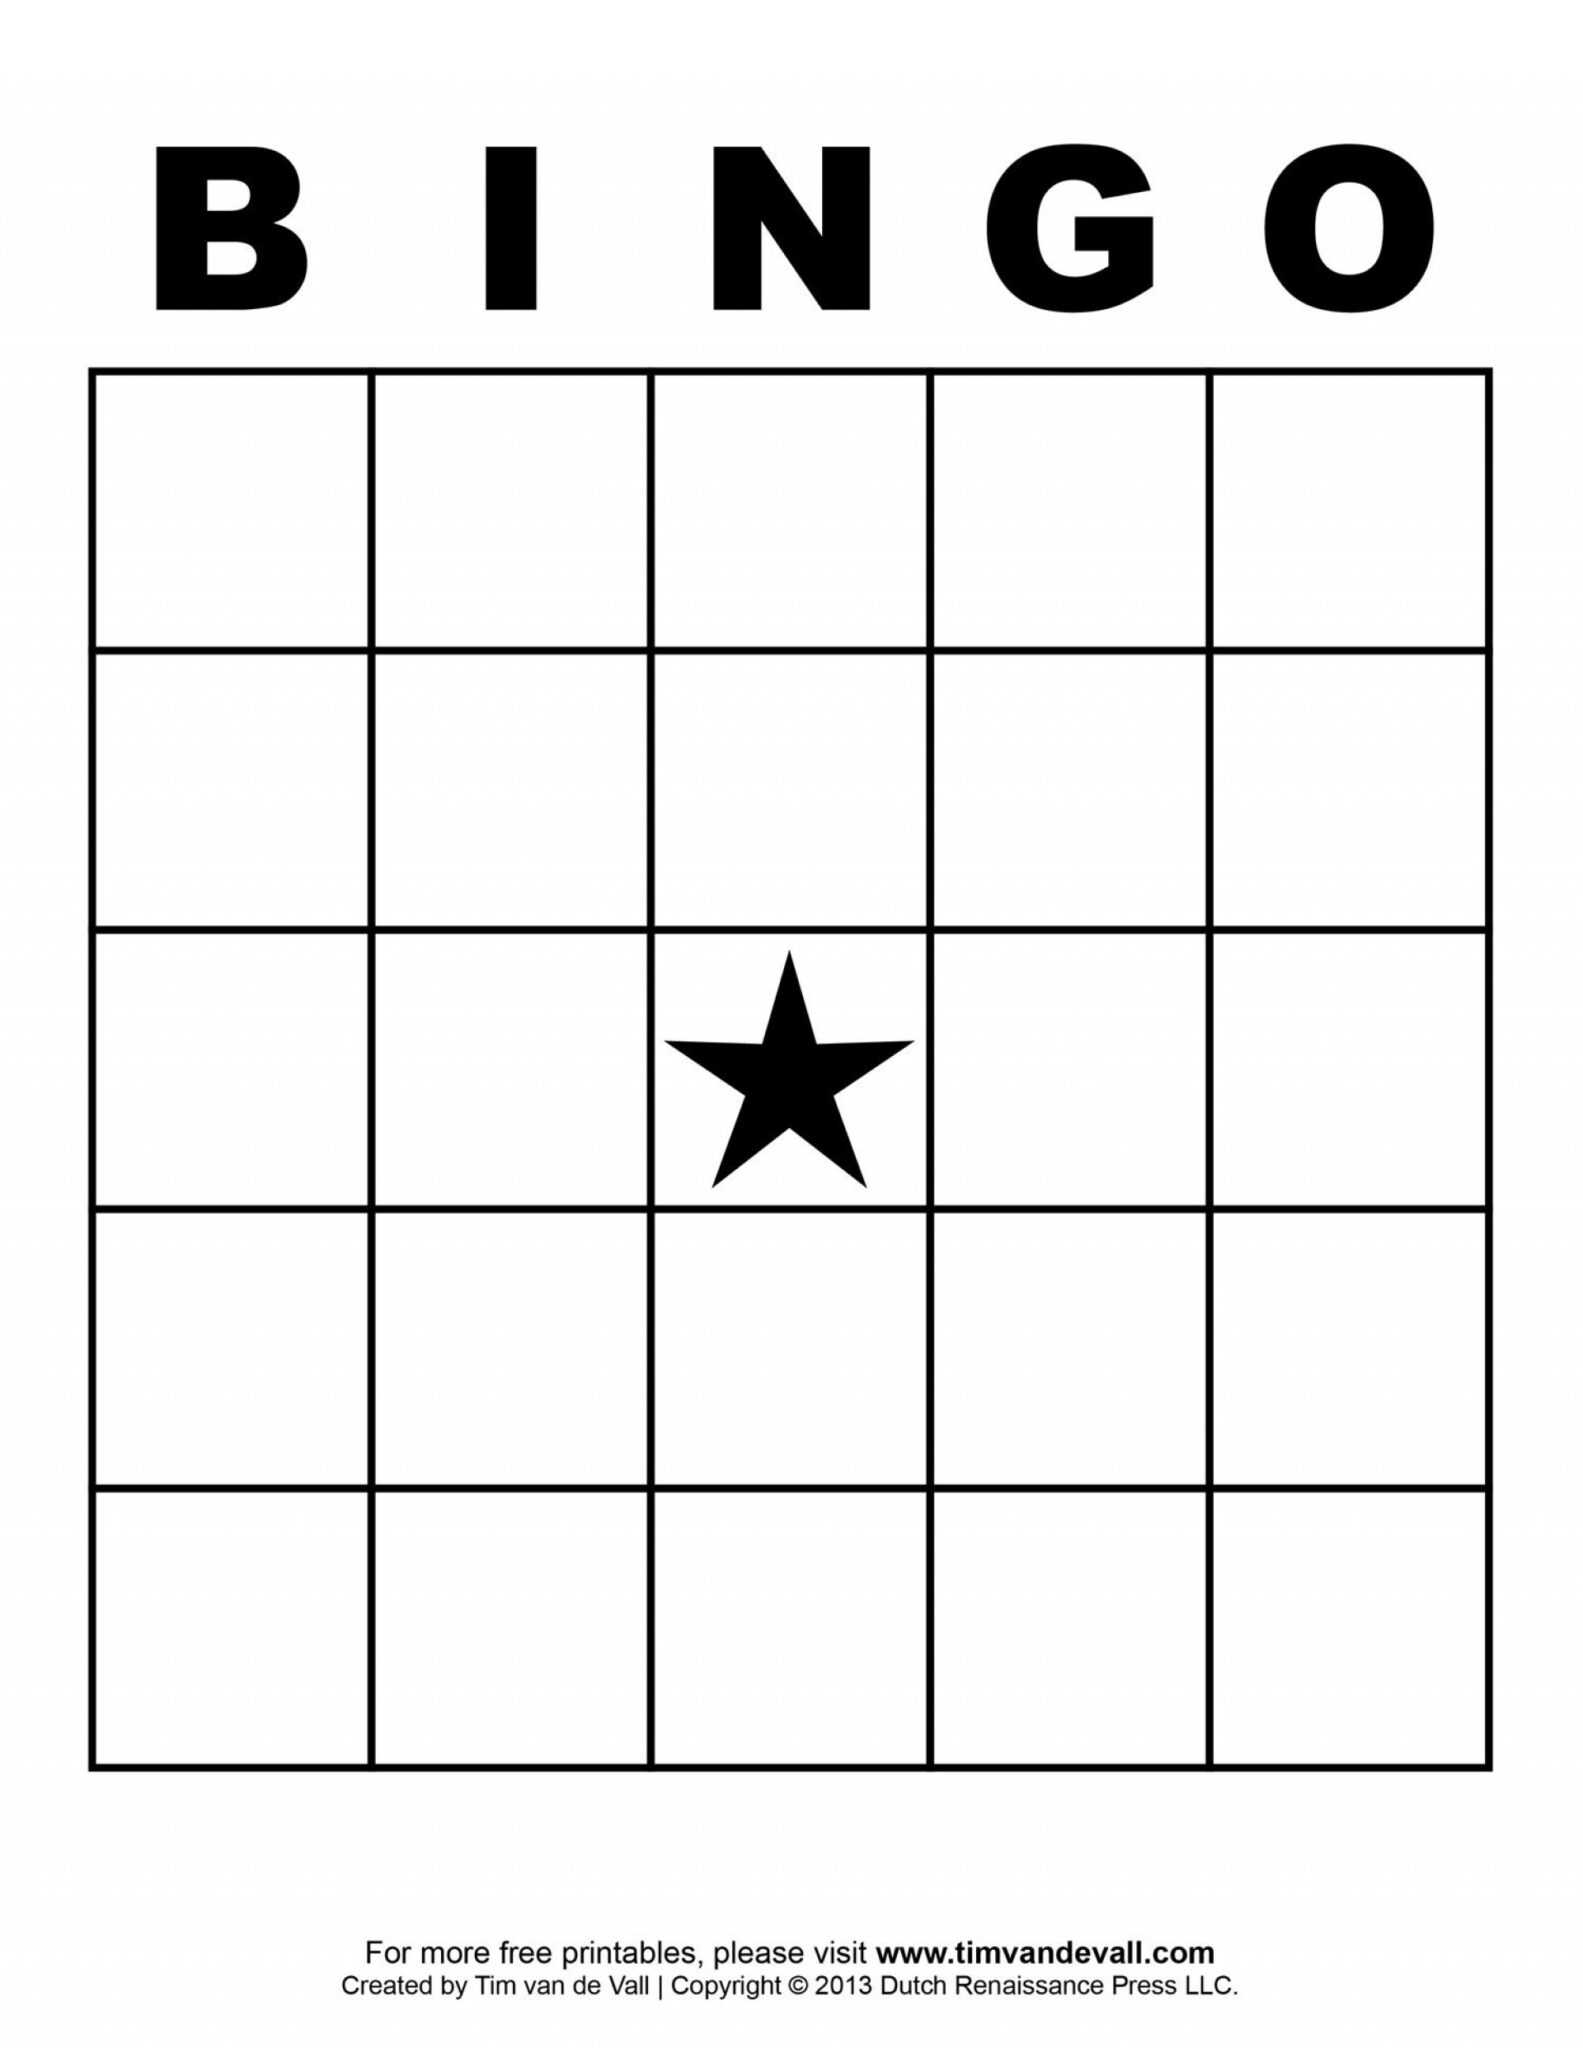 ms word bingo flyer template